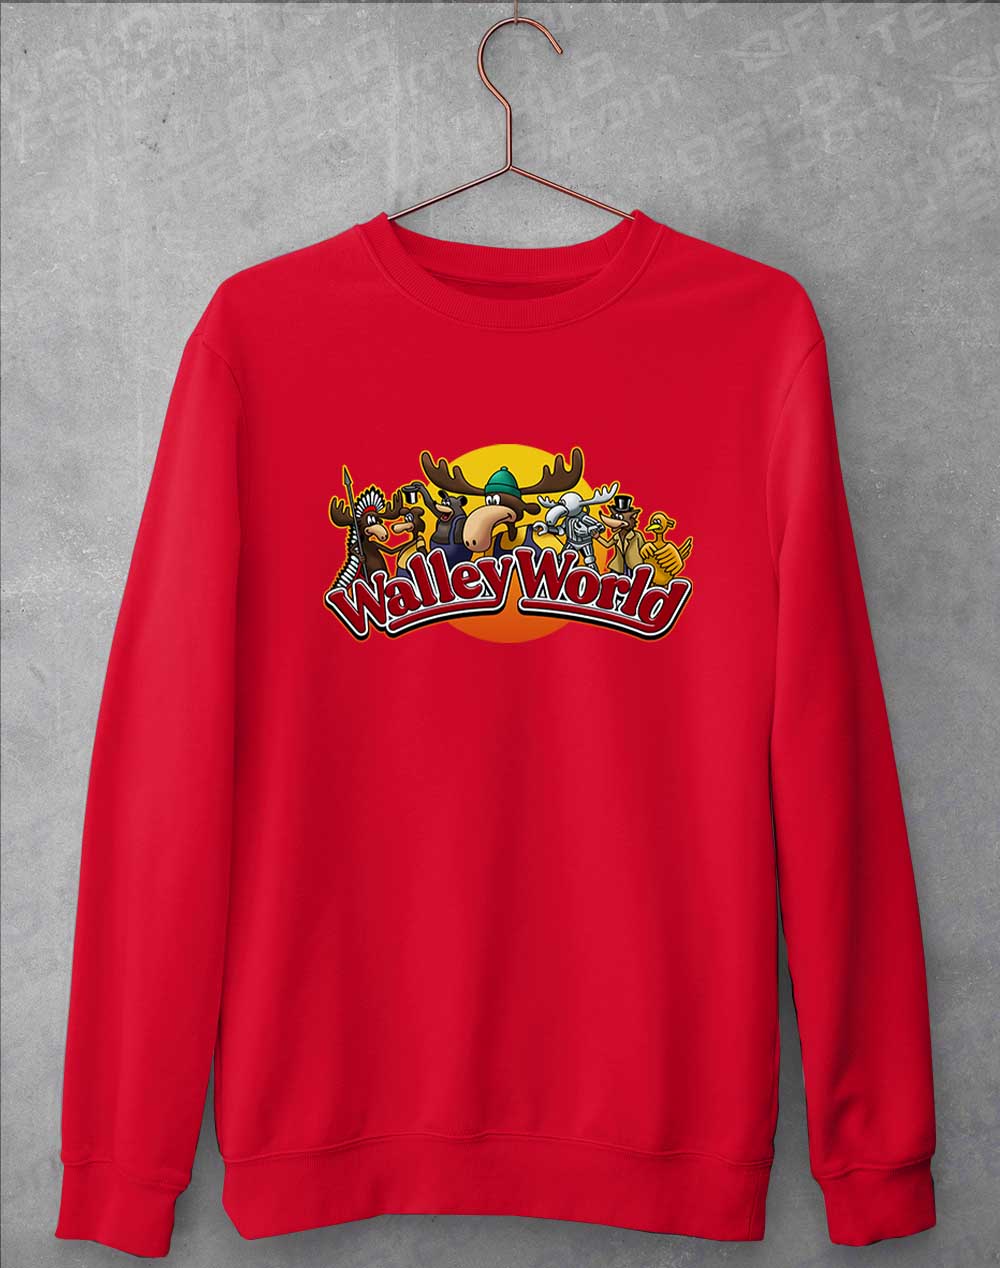 Fire Red - Walley World Sweatshirt